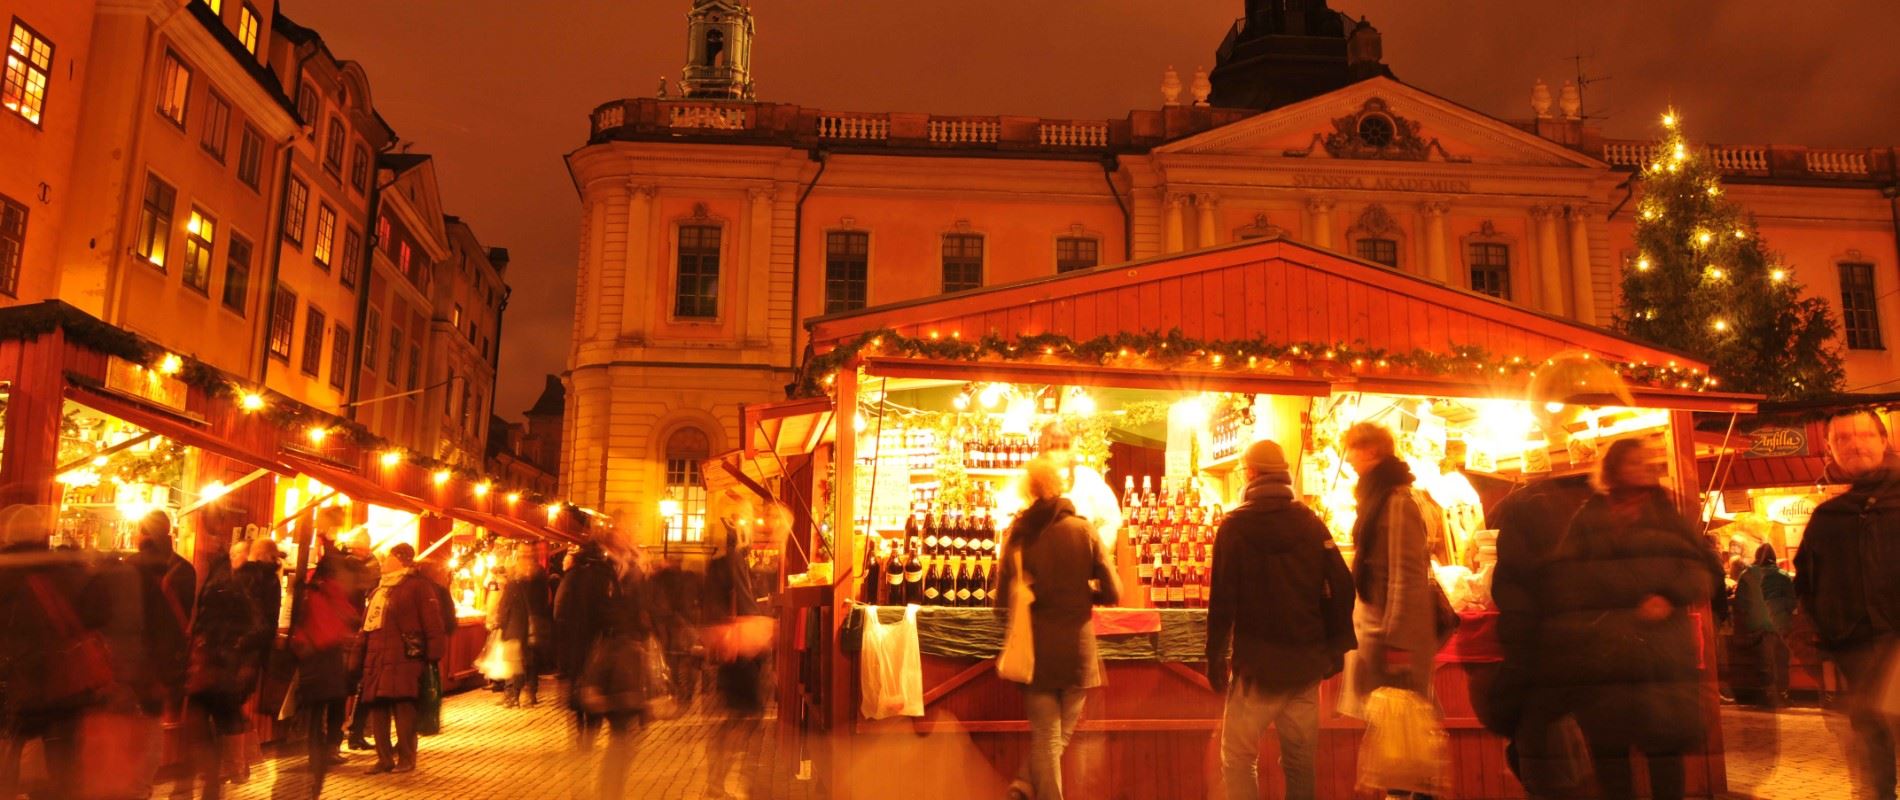 Christmas Market break in Stockholm | Sunvil.co.uk